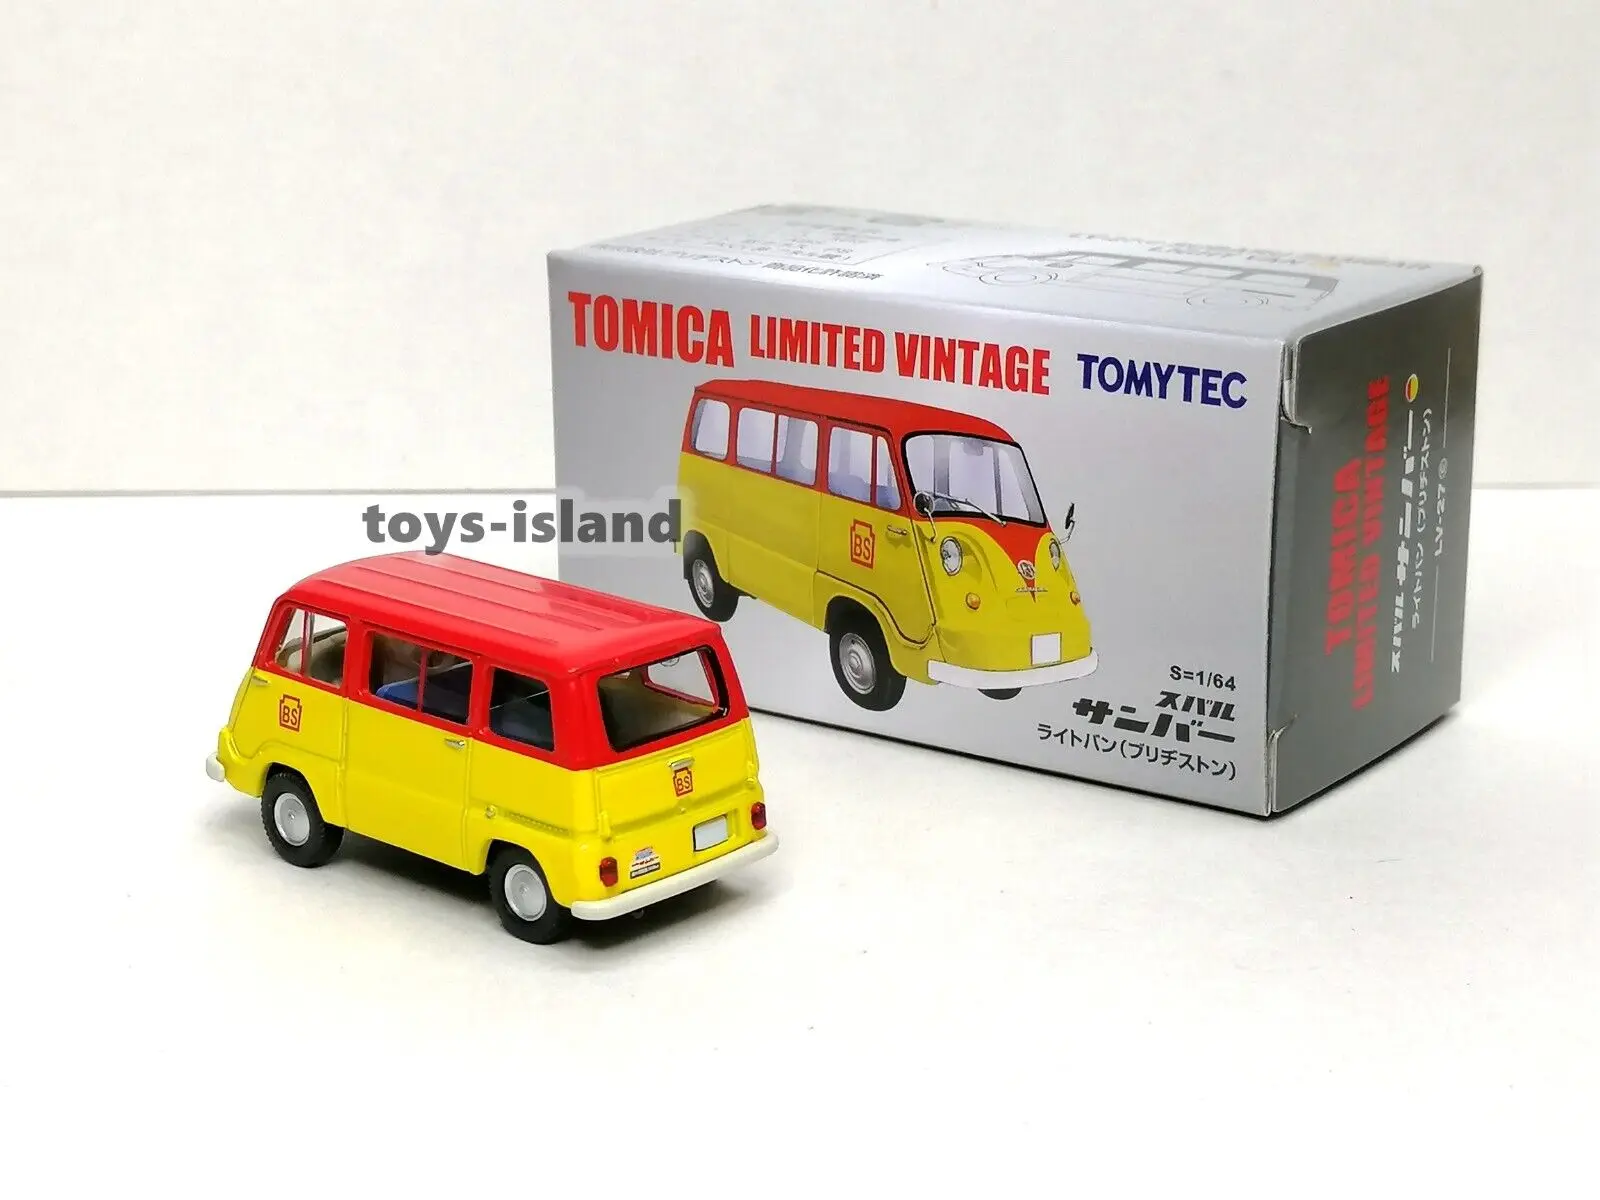 

Tomica Limited Vintage NEO LV-199c S600 открытая верхняя черная коллекция 1/64 TOMYTE литые модели автомобилей ограниченное редактирование